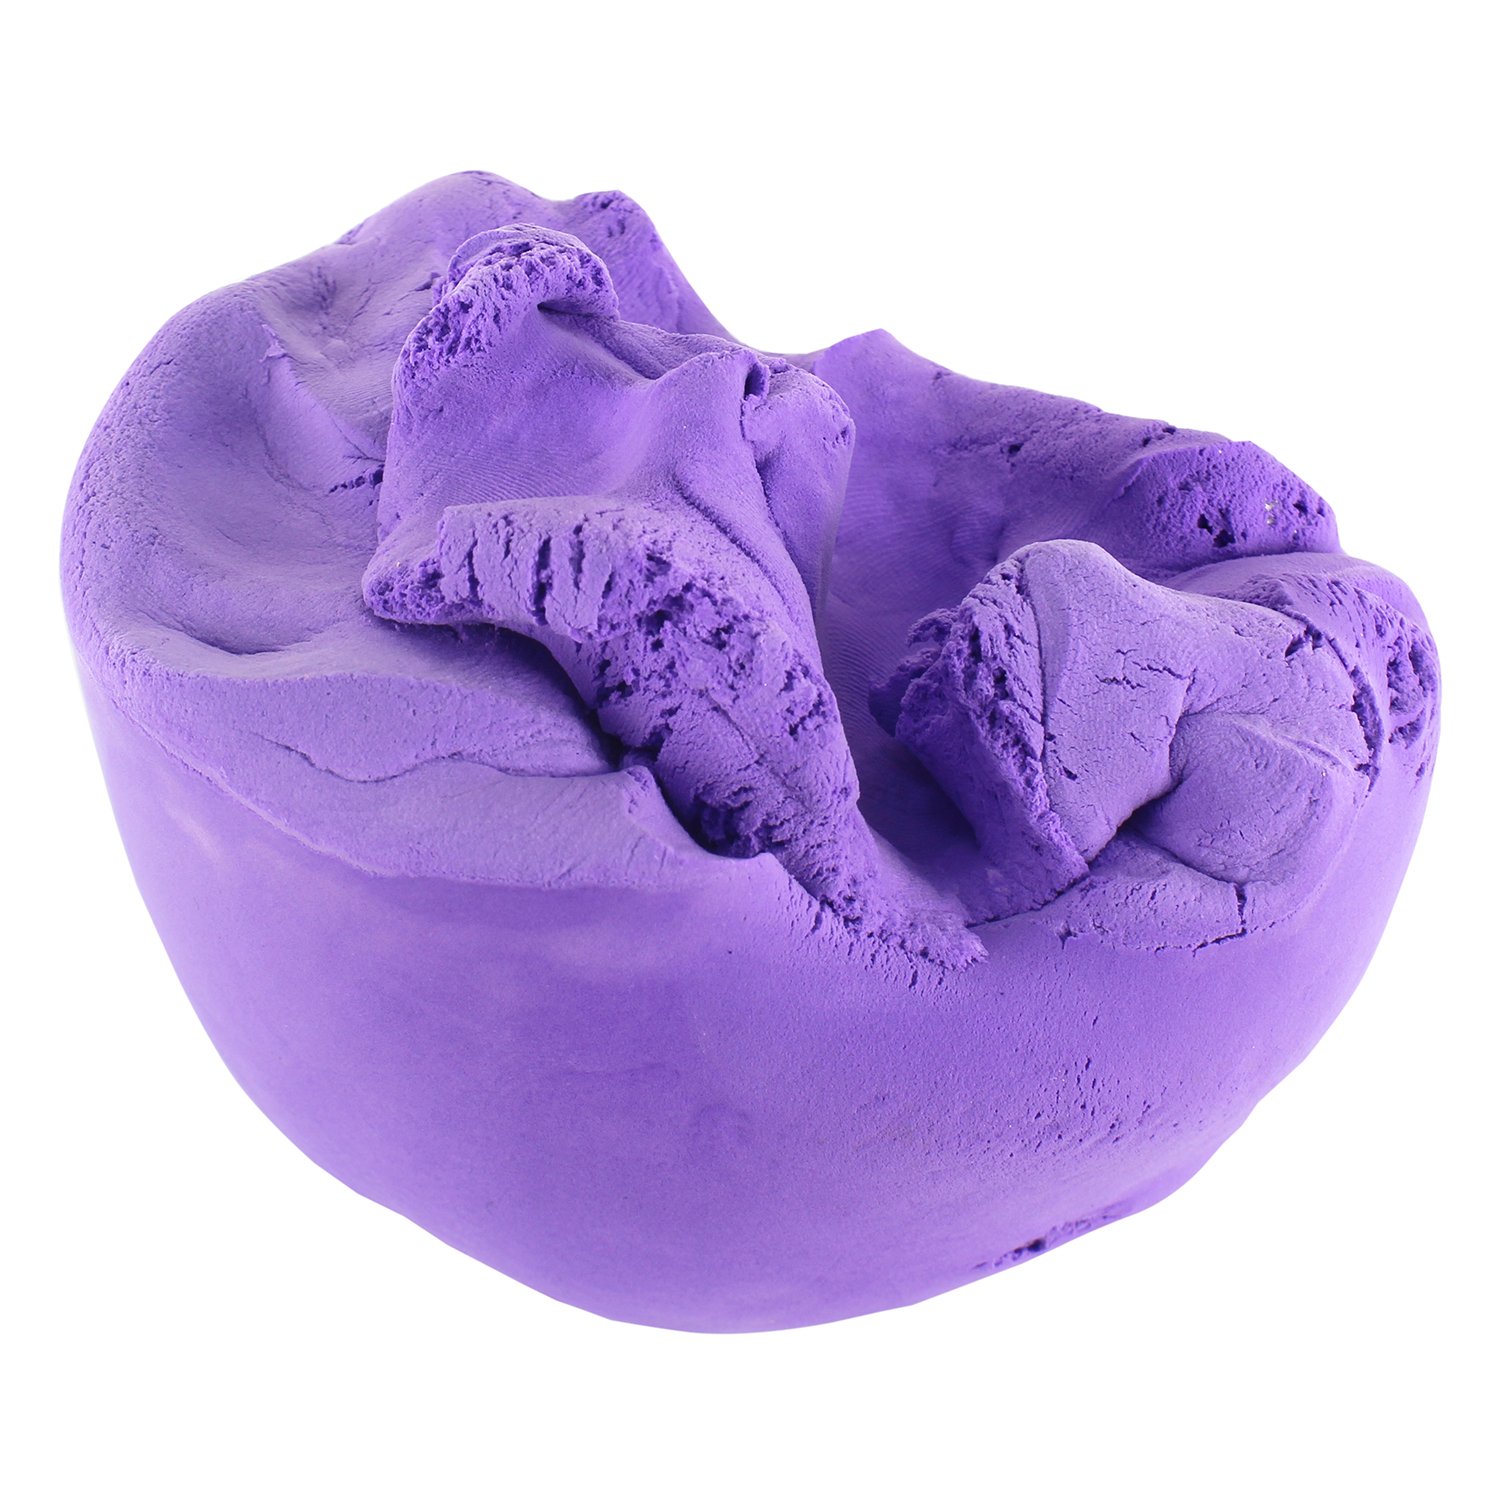 Кинетическая глина, фиолетовая, банка 230 грамм   